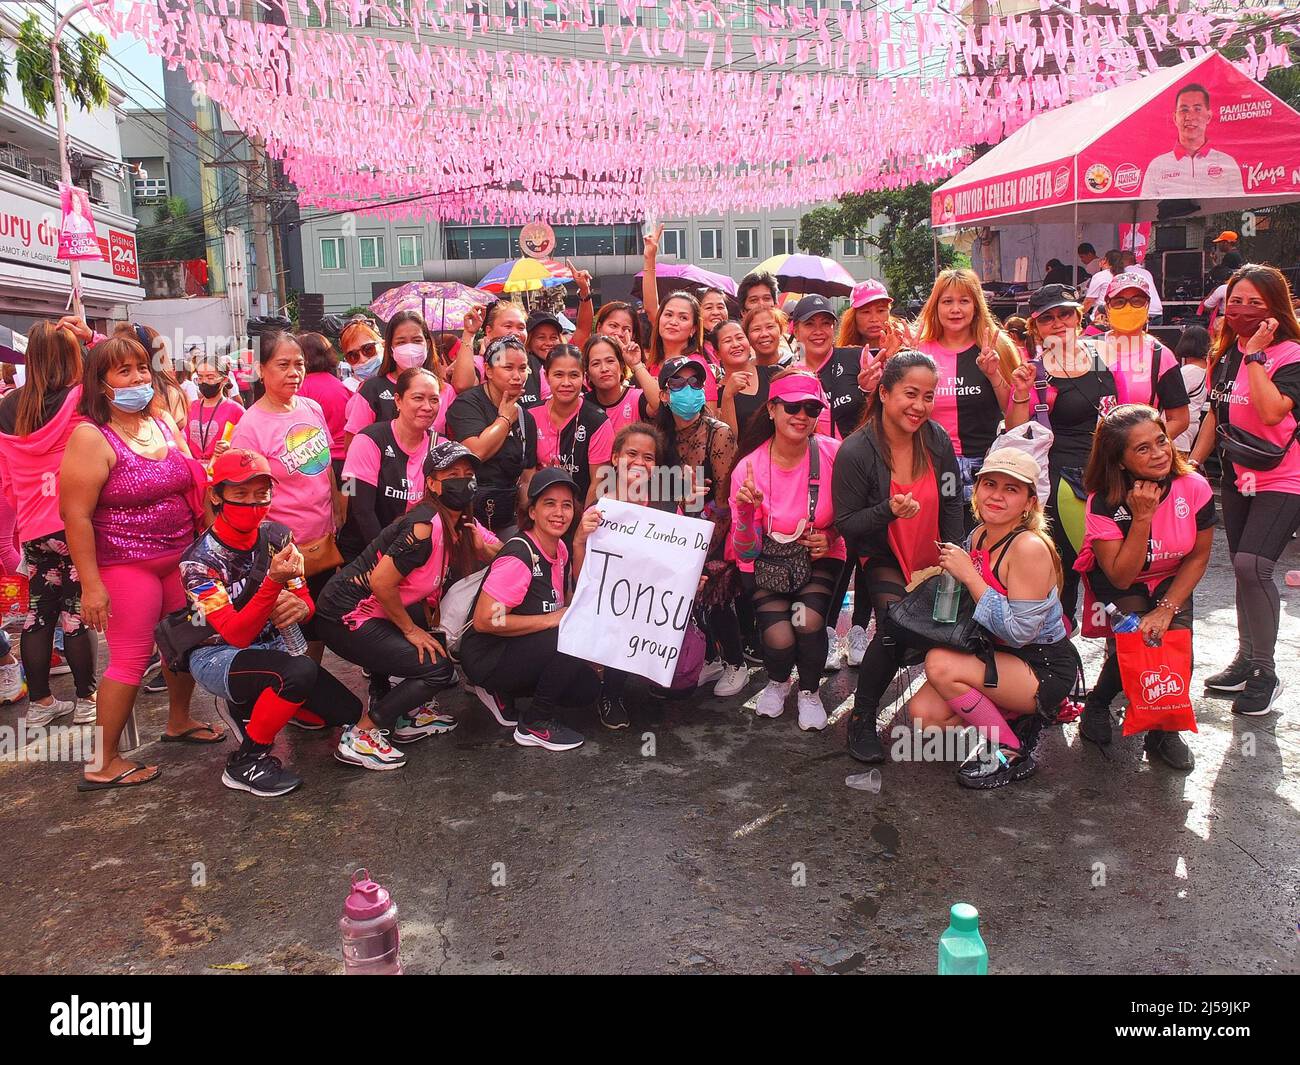 Malabo, Philippines. 21st avril 2022. Les femmes du groupe de danse Zumba posent pour un groupe de selfie pendant la célébration. Malabuon célèbre son anniversaire de la ville en 21st avec des jubilations de résidents malaboniens, en particulier les étudiants. Malabo est devenue une ville très urbanisée le 21 avril 2001, en vertu de la loi de la République n° 9019, 407 ans après sa fondation. Crédit : SOPA Images Limited/Alamy Live News Banque D'Images